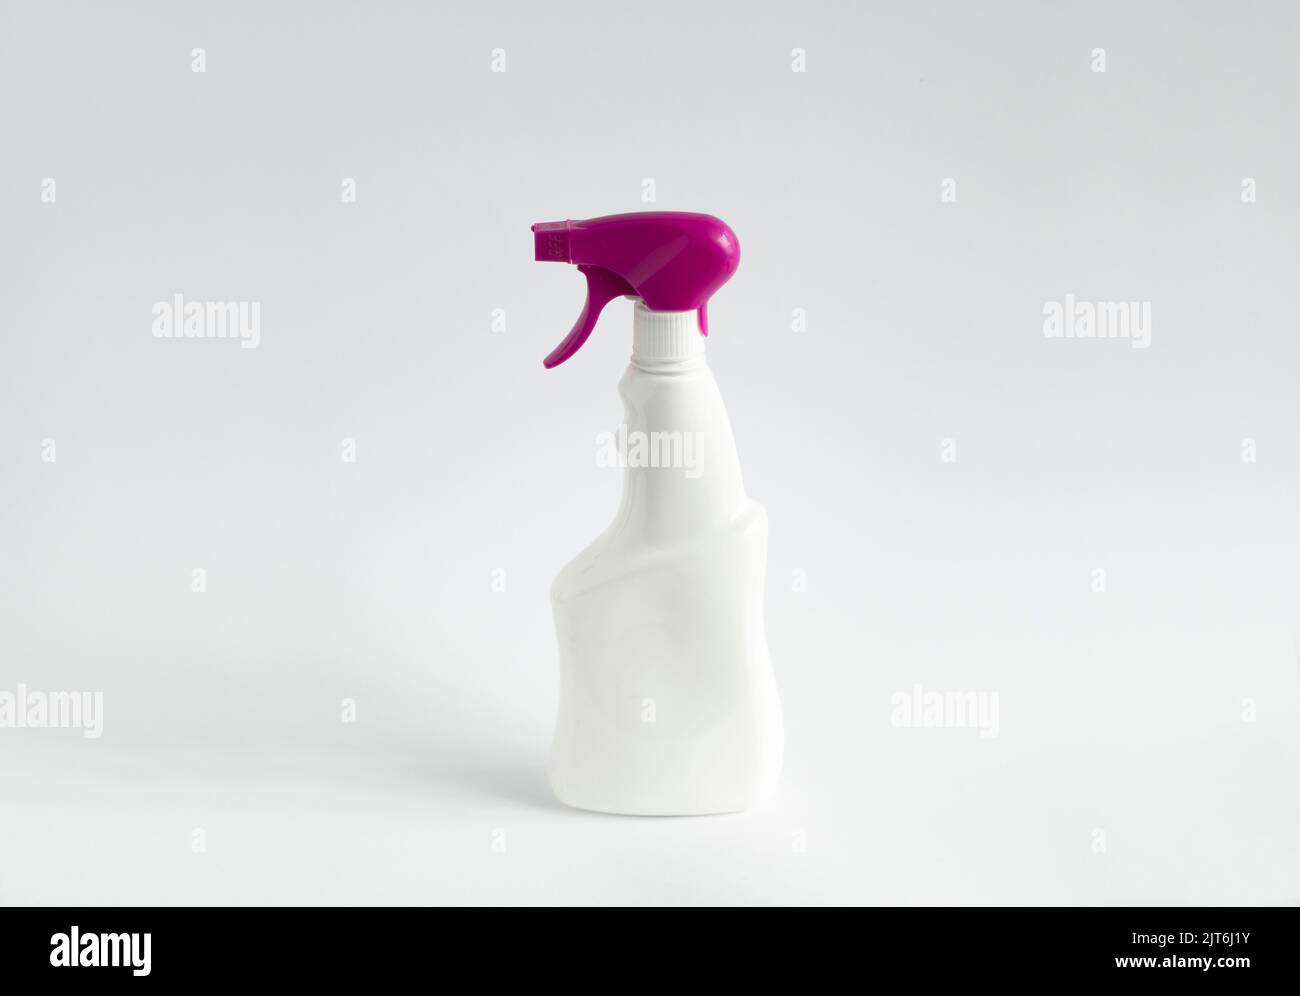 Flacons de détergent blanc ou fournitures de nettoyage chimique avec un pulvérisateur violet isolé sur fond blanc. Banque D'Images